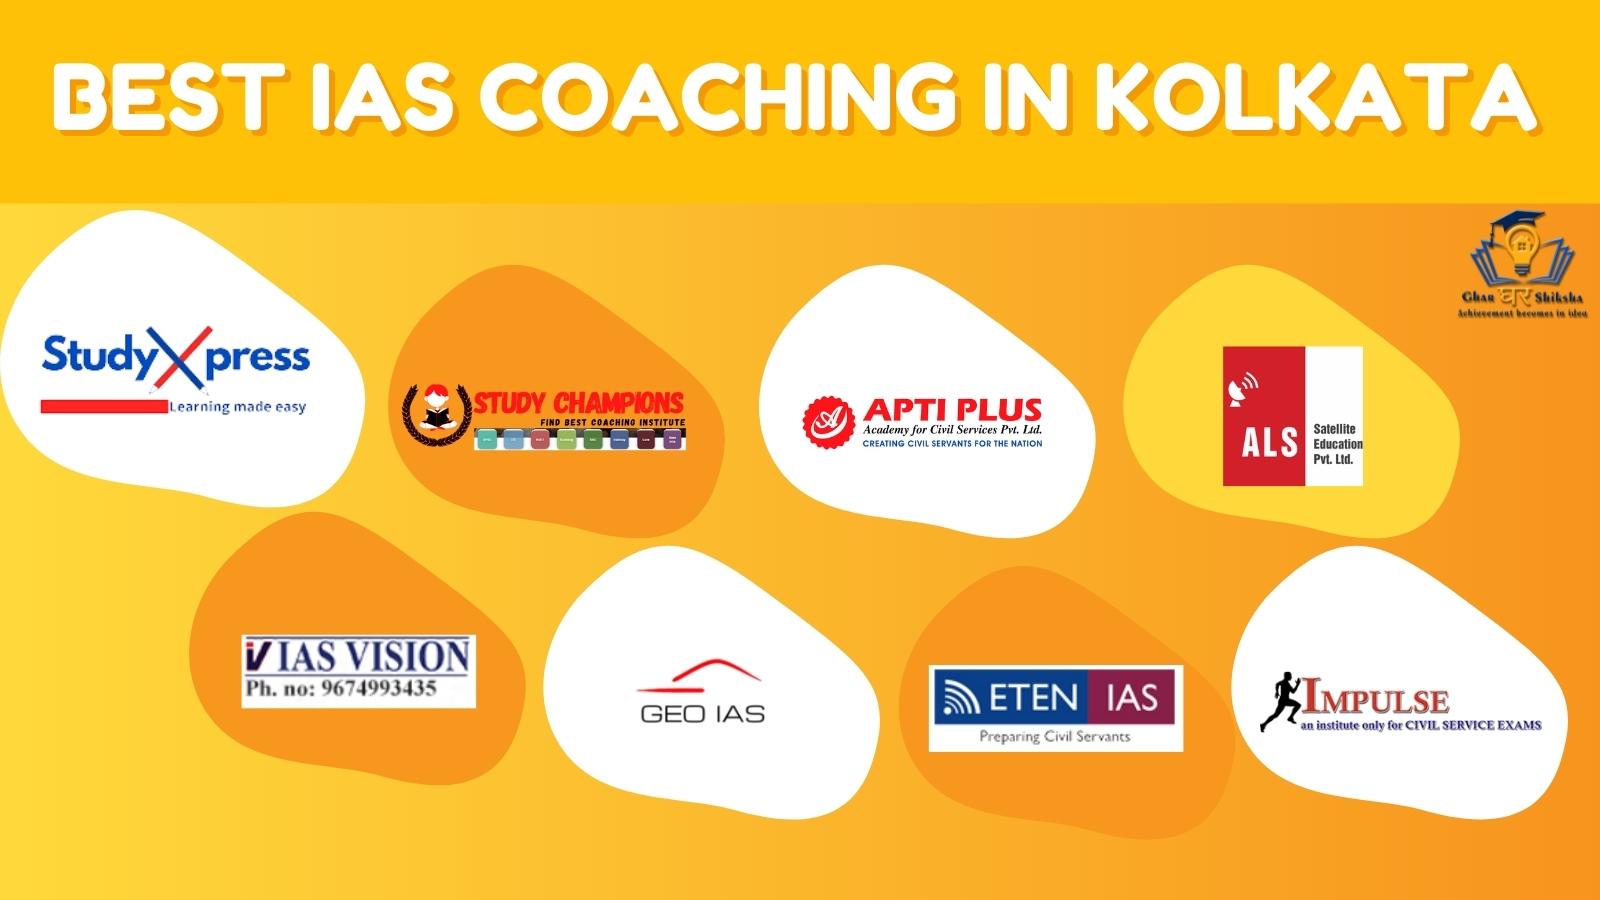 Best IAS Coaching Institutes In Kolkata